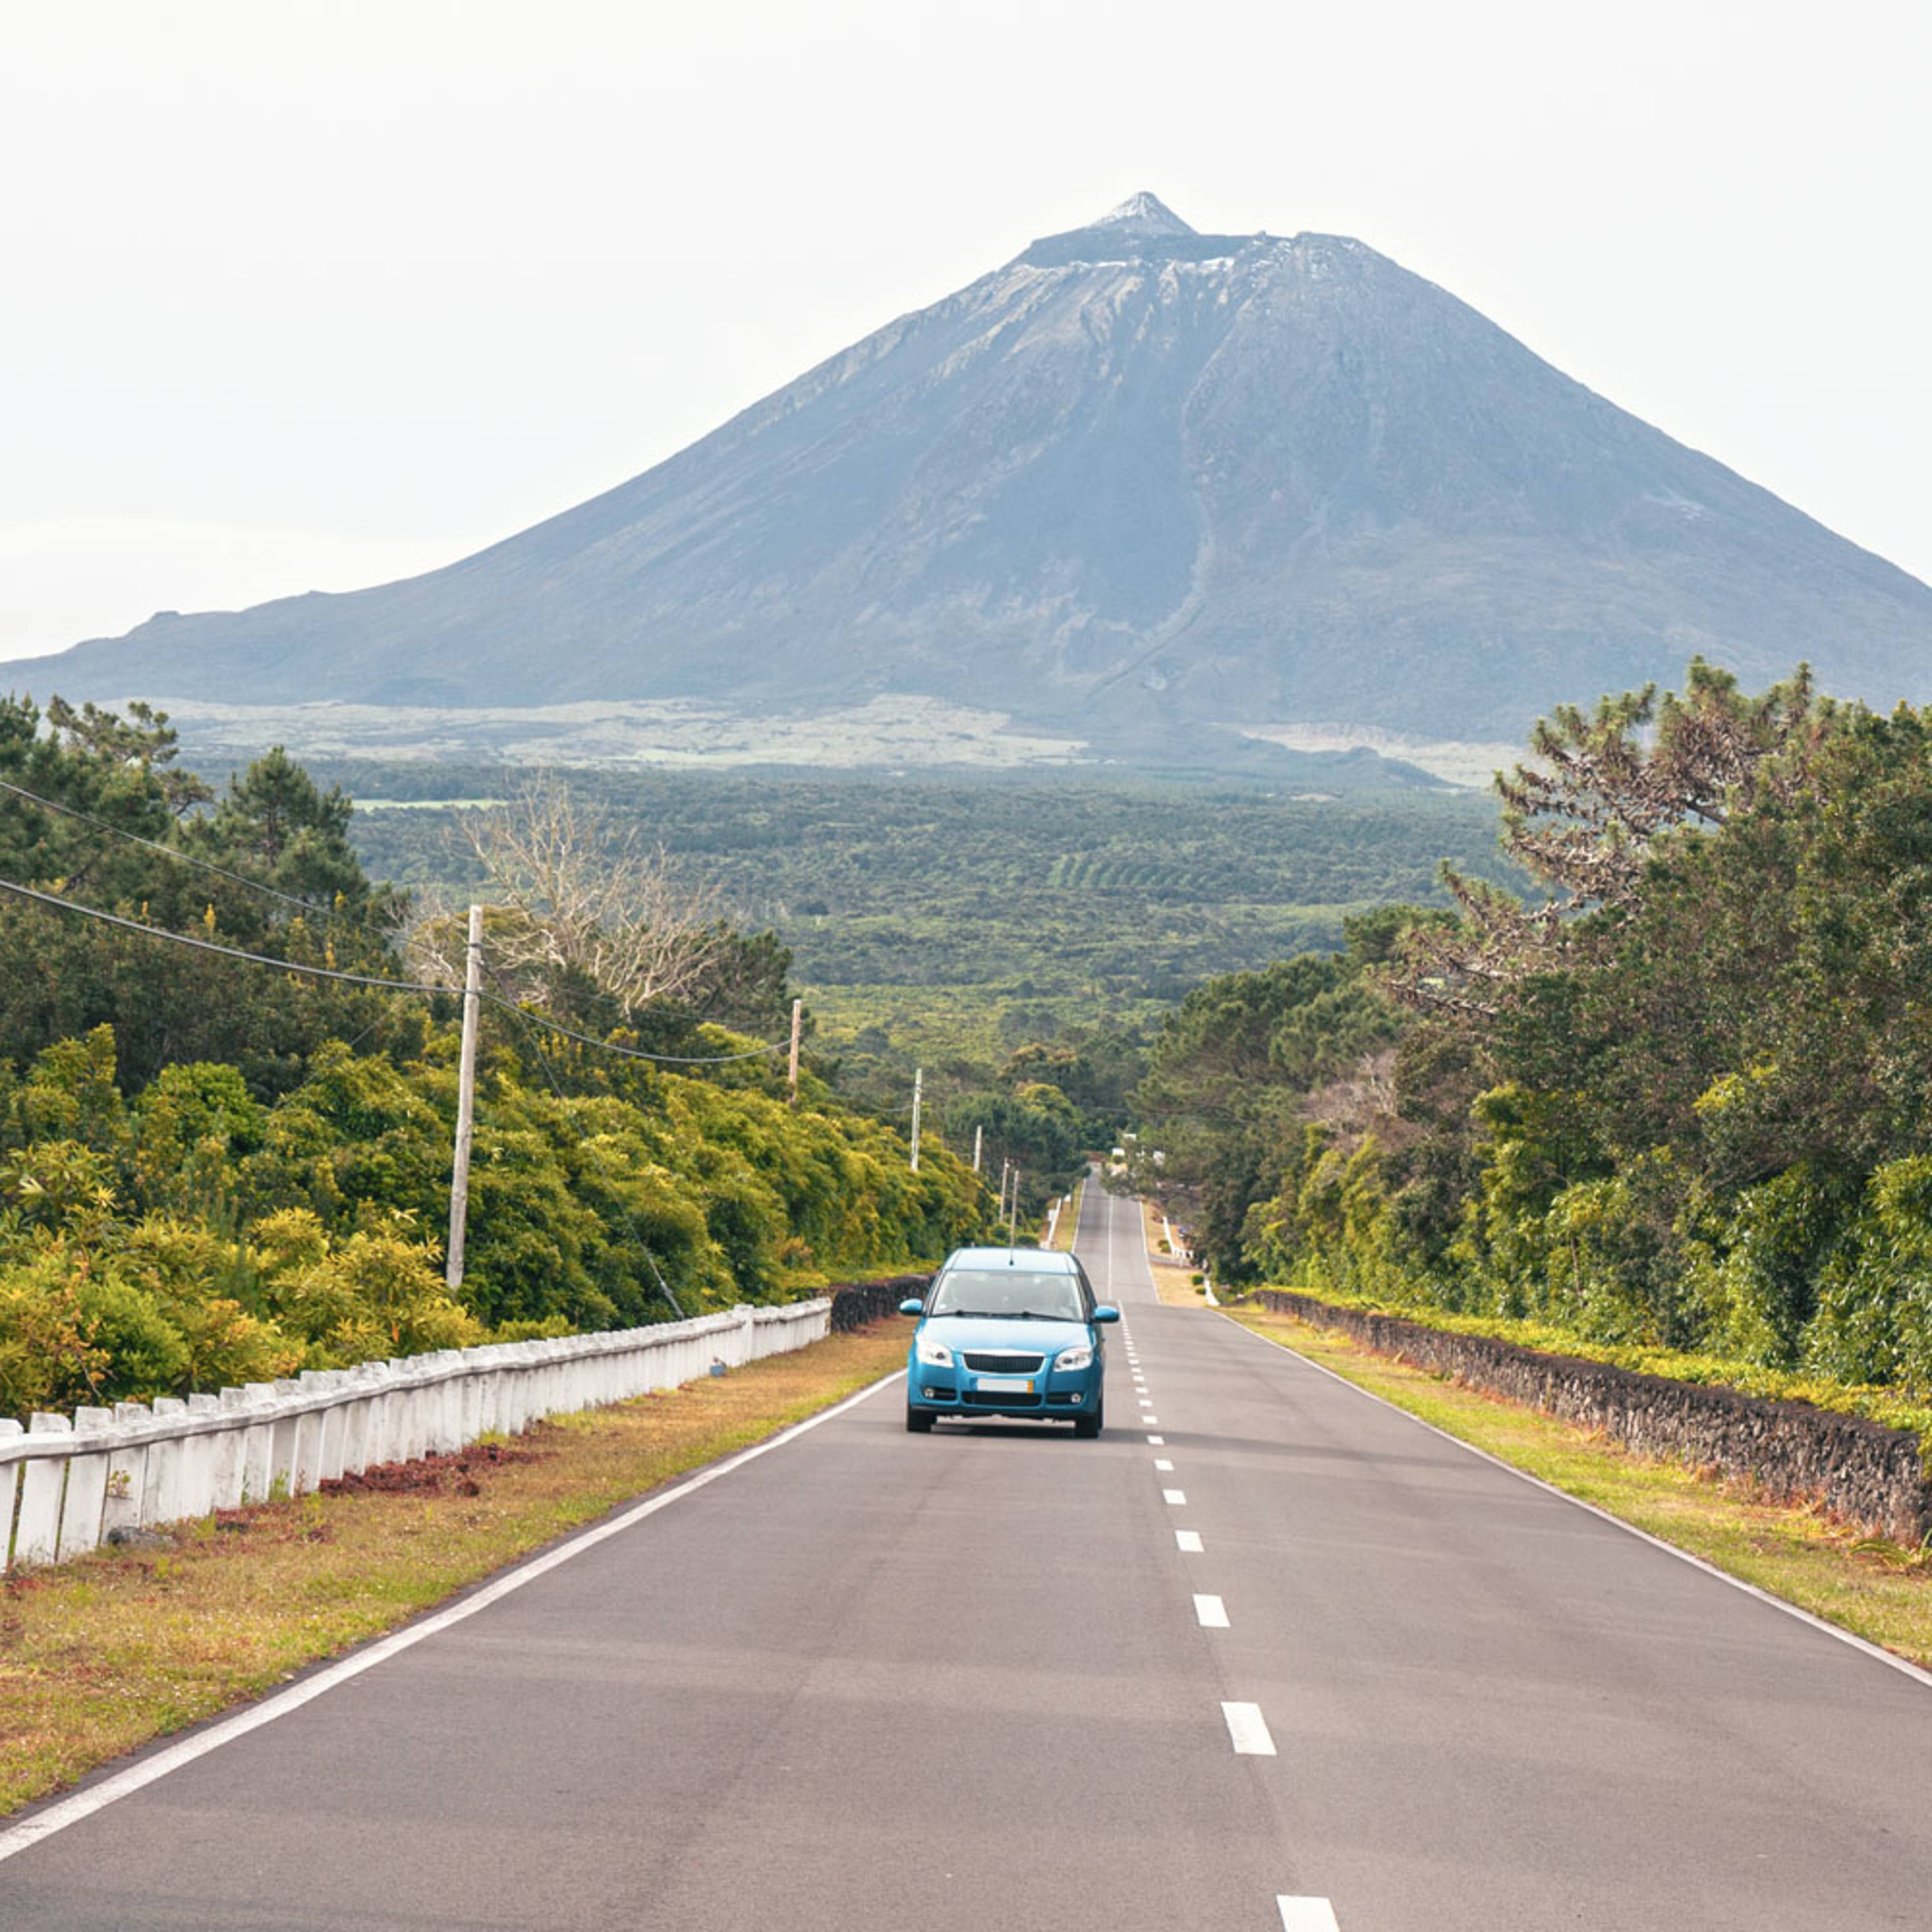 Votre voyage en autotour aux Açores 100% sur mesure